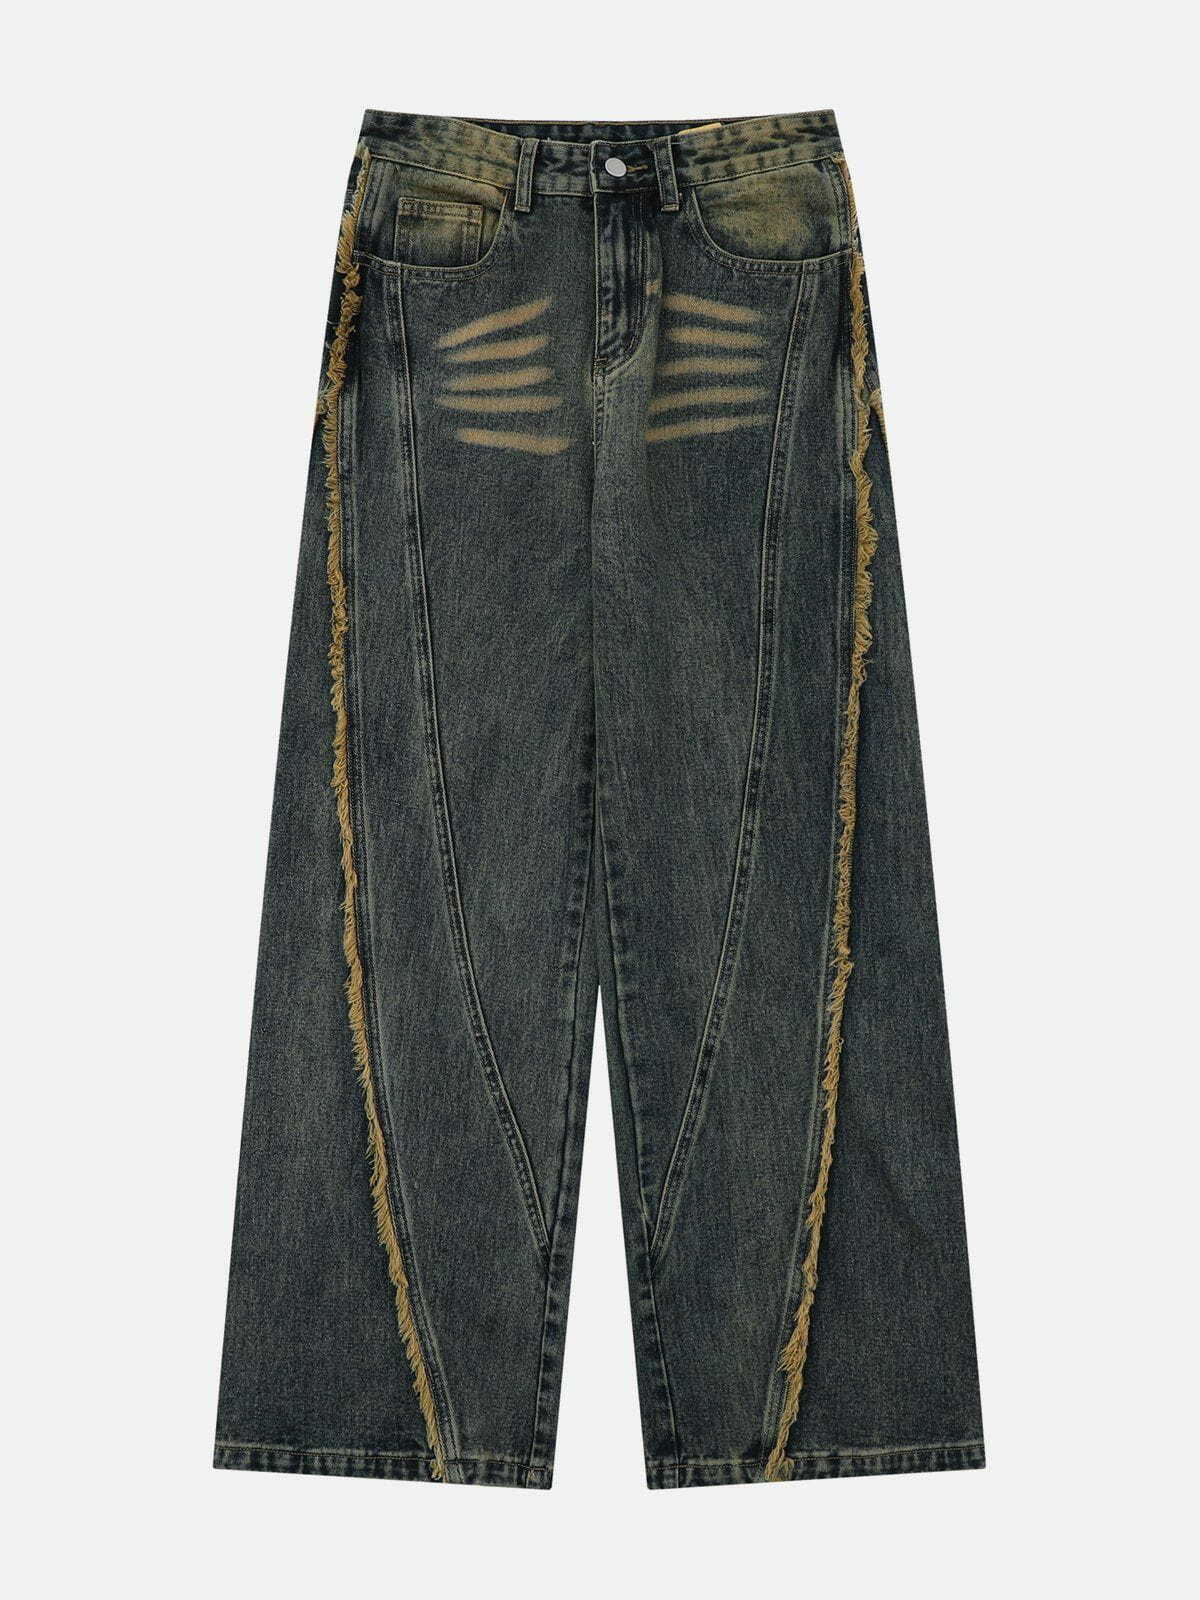 fringe washed jeans edgy & retro denim 8042